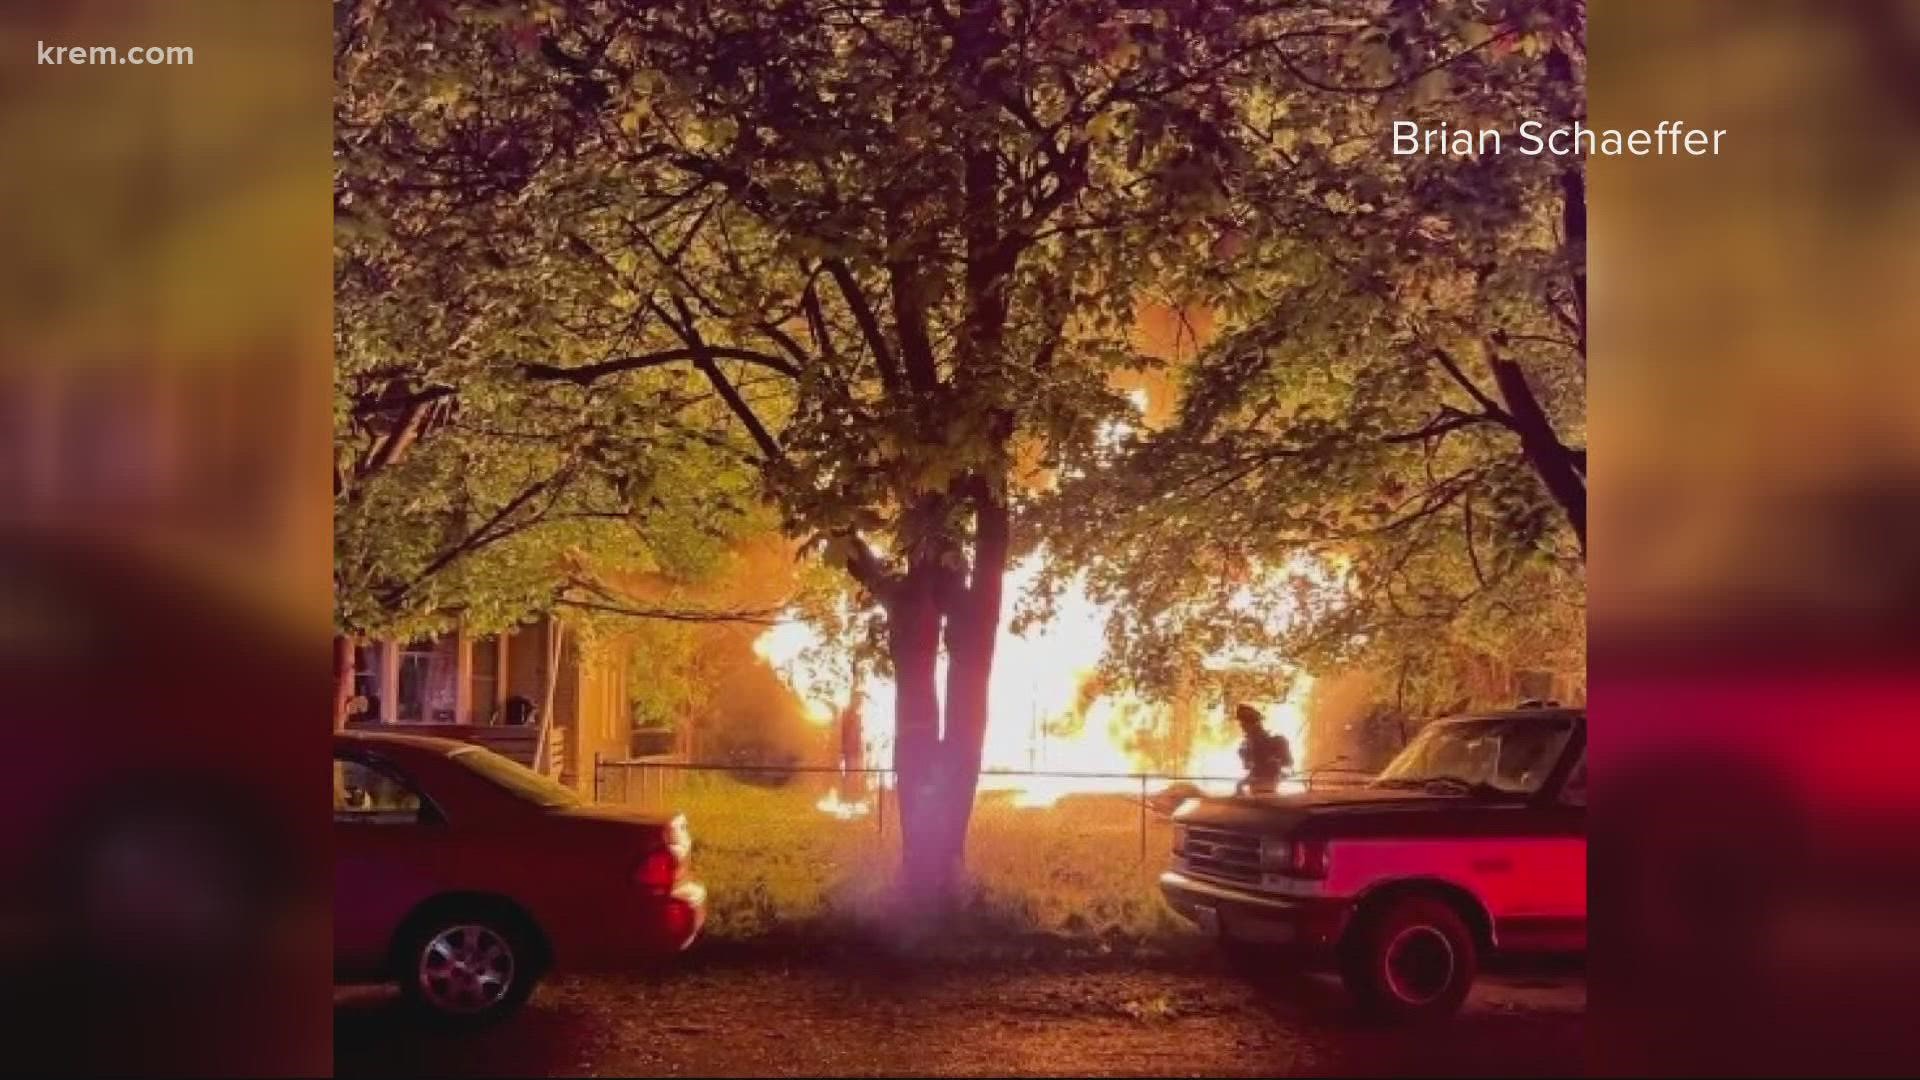 One person found dead in Spokane house fire